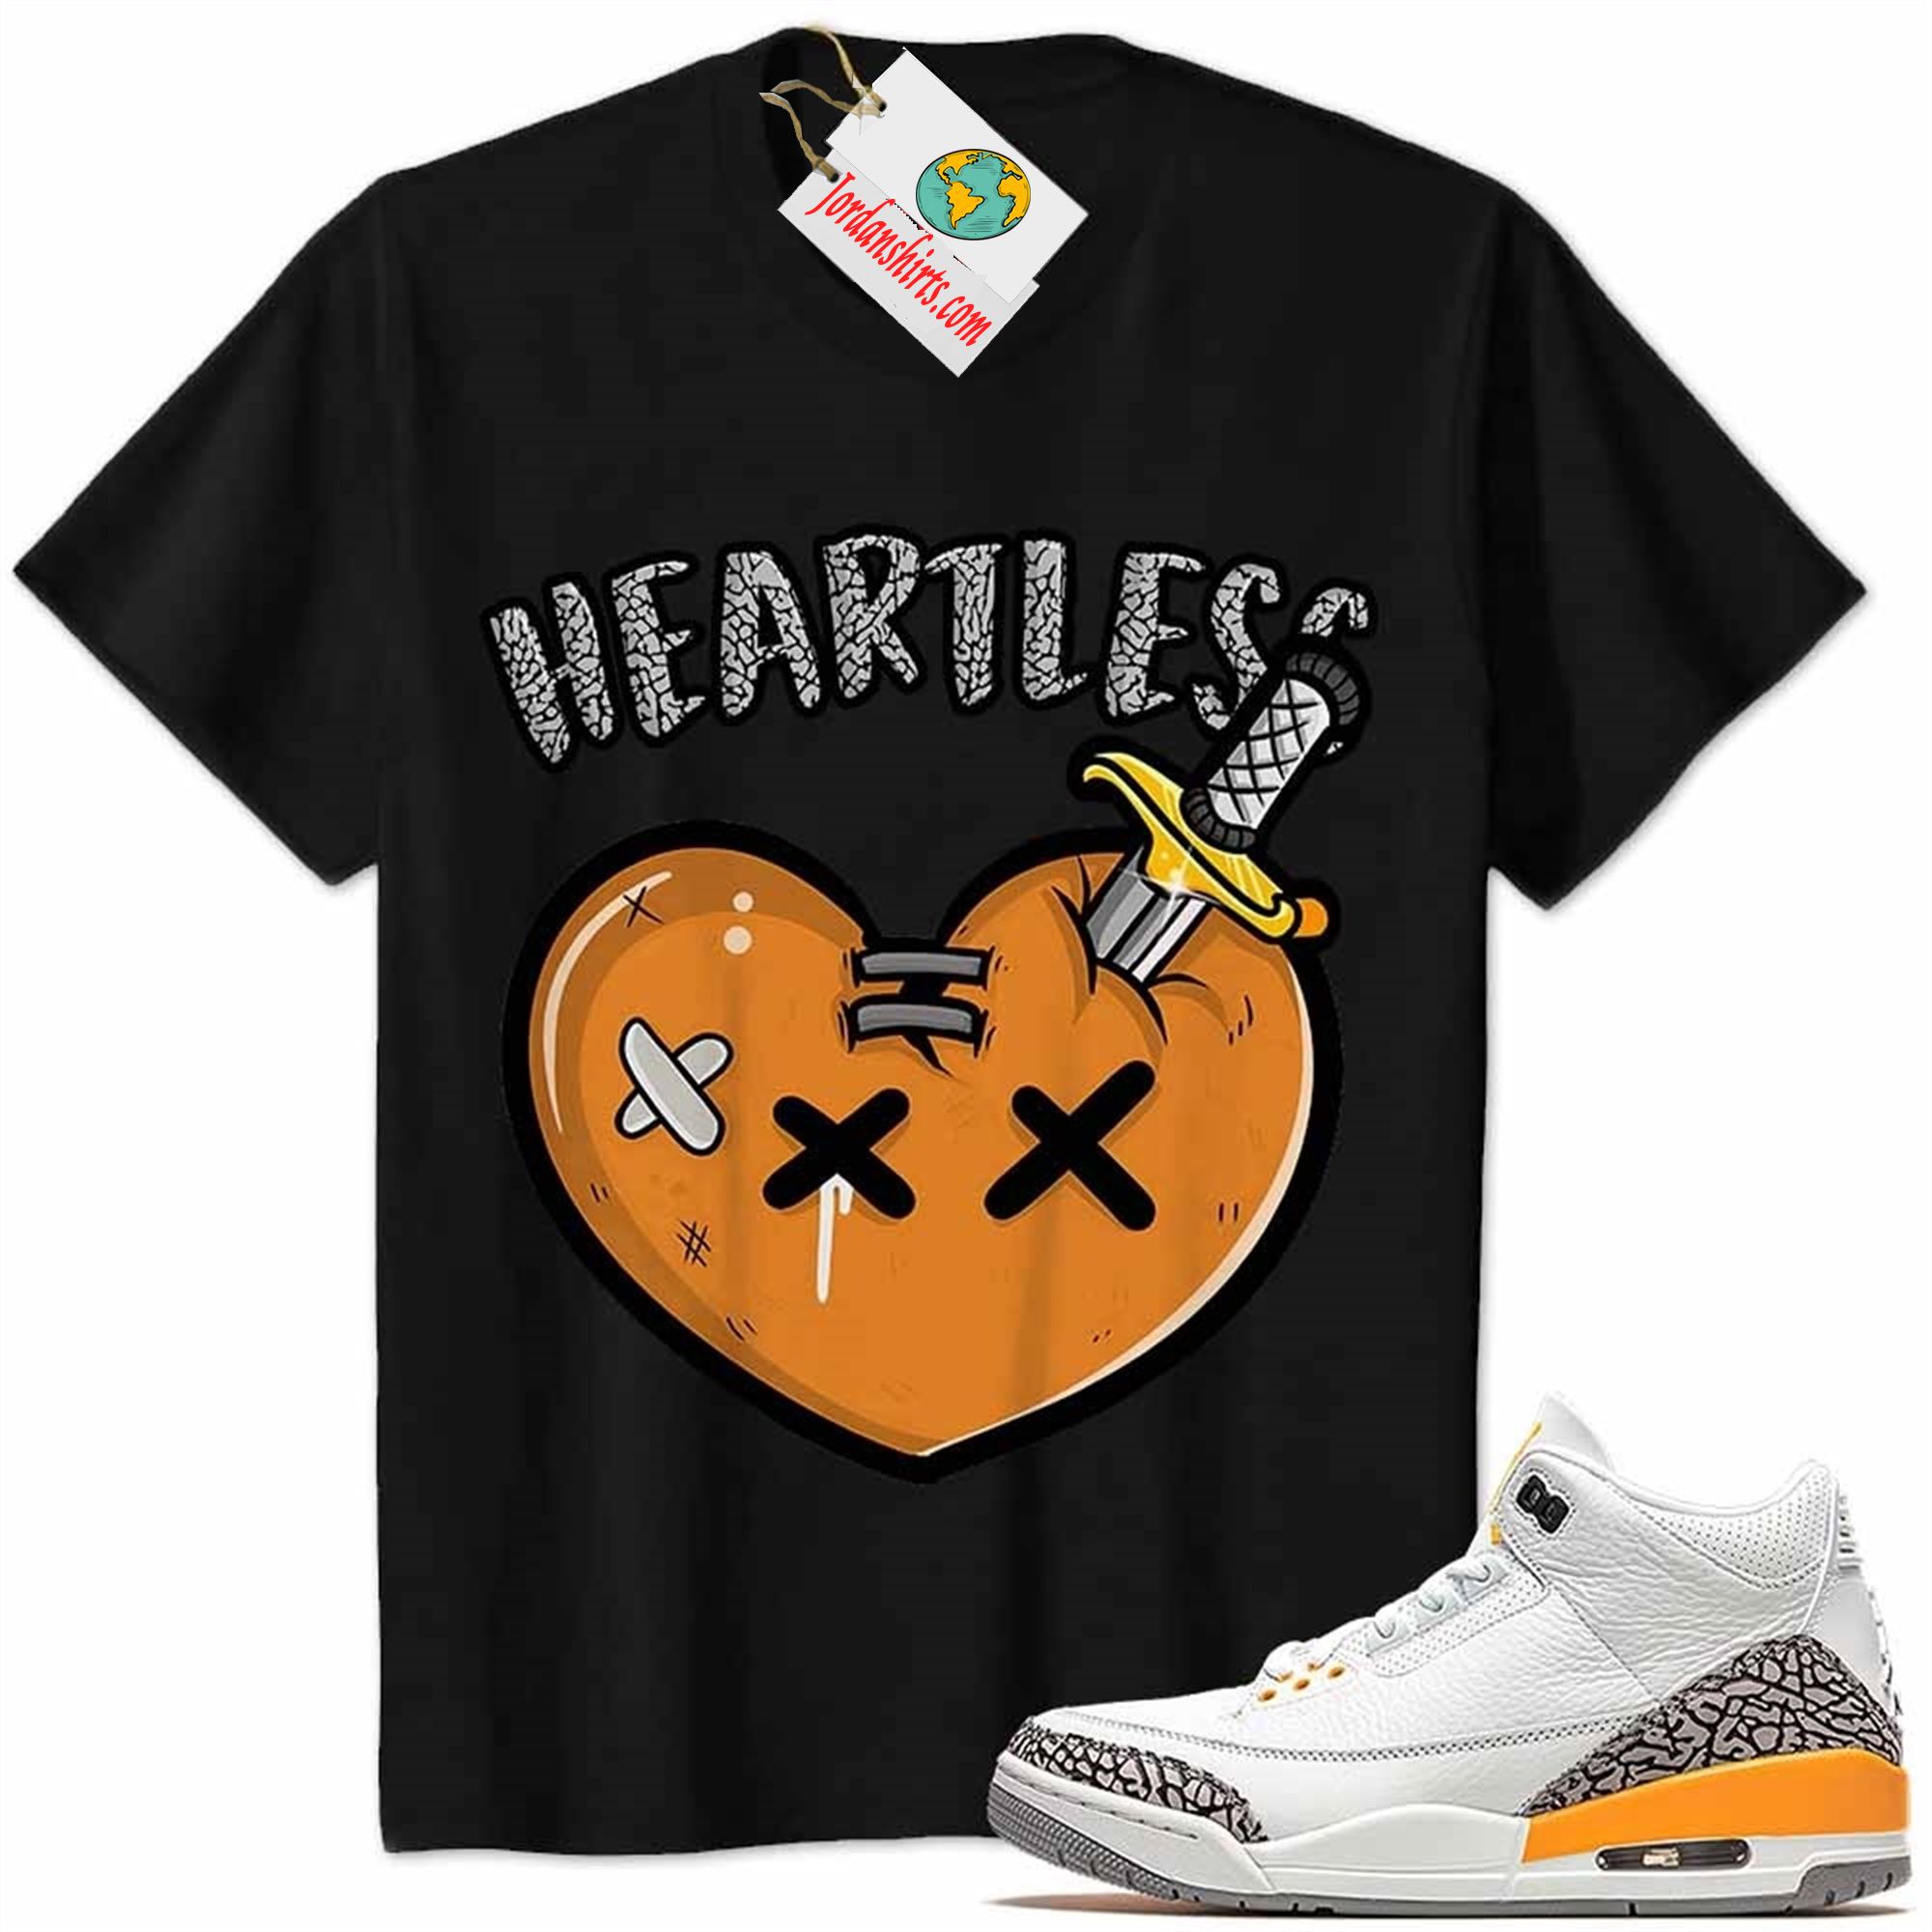 Jordan 3 Shirt, Crying Heart Heartless Black Air Jordan 3 Laser Orange 3s Full Size Up To 5xl